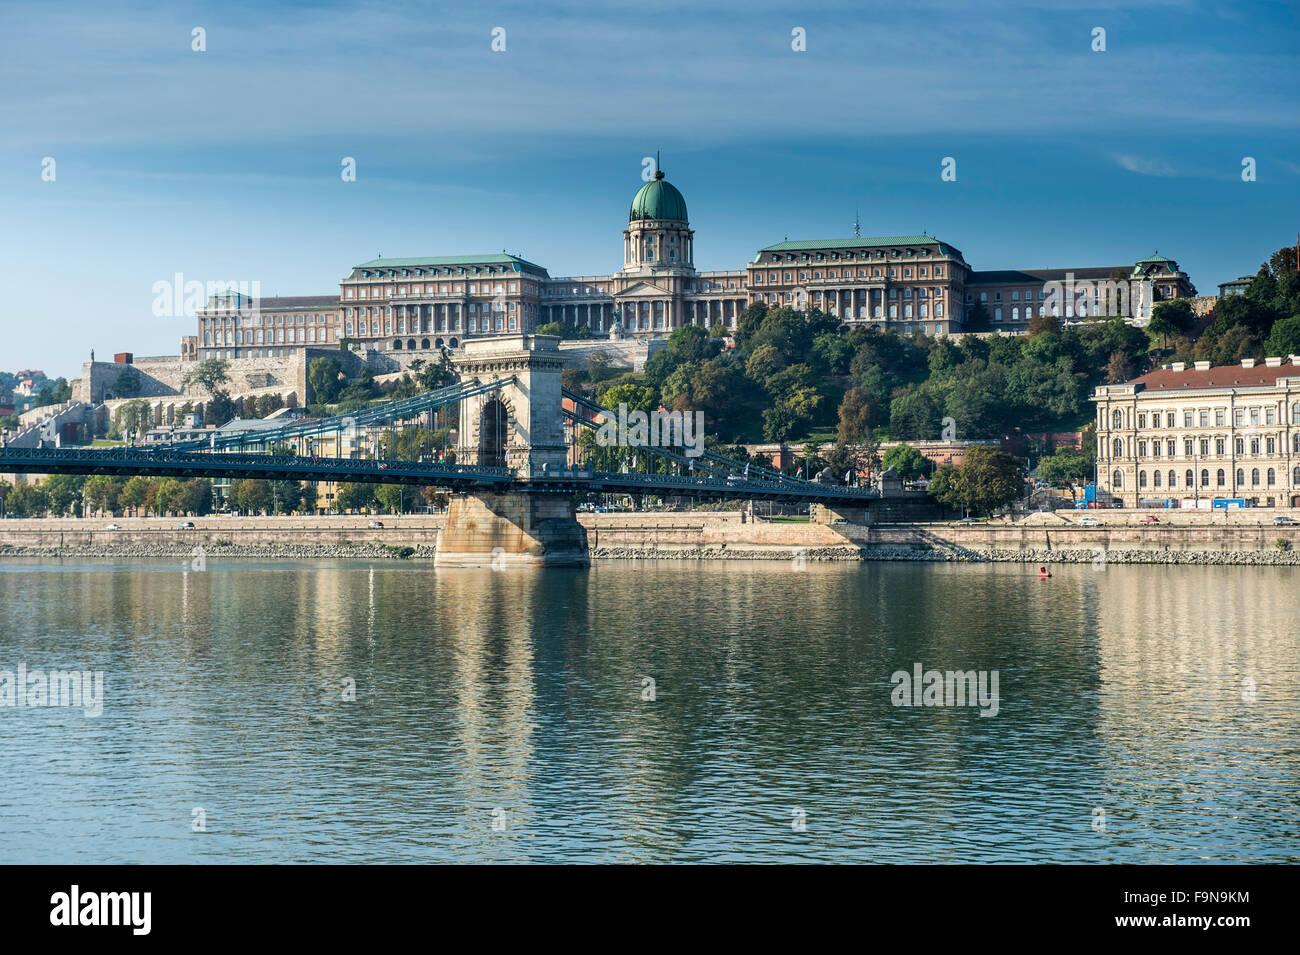 Vue panoramique, le château de Buda et le pont à chaînes Széchenyi, Lánchid, Budapest, Hongrie Banque D'Images